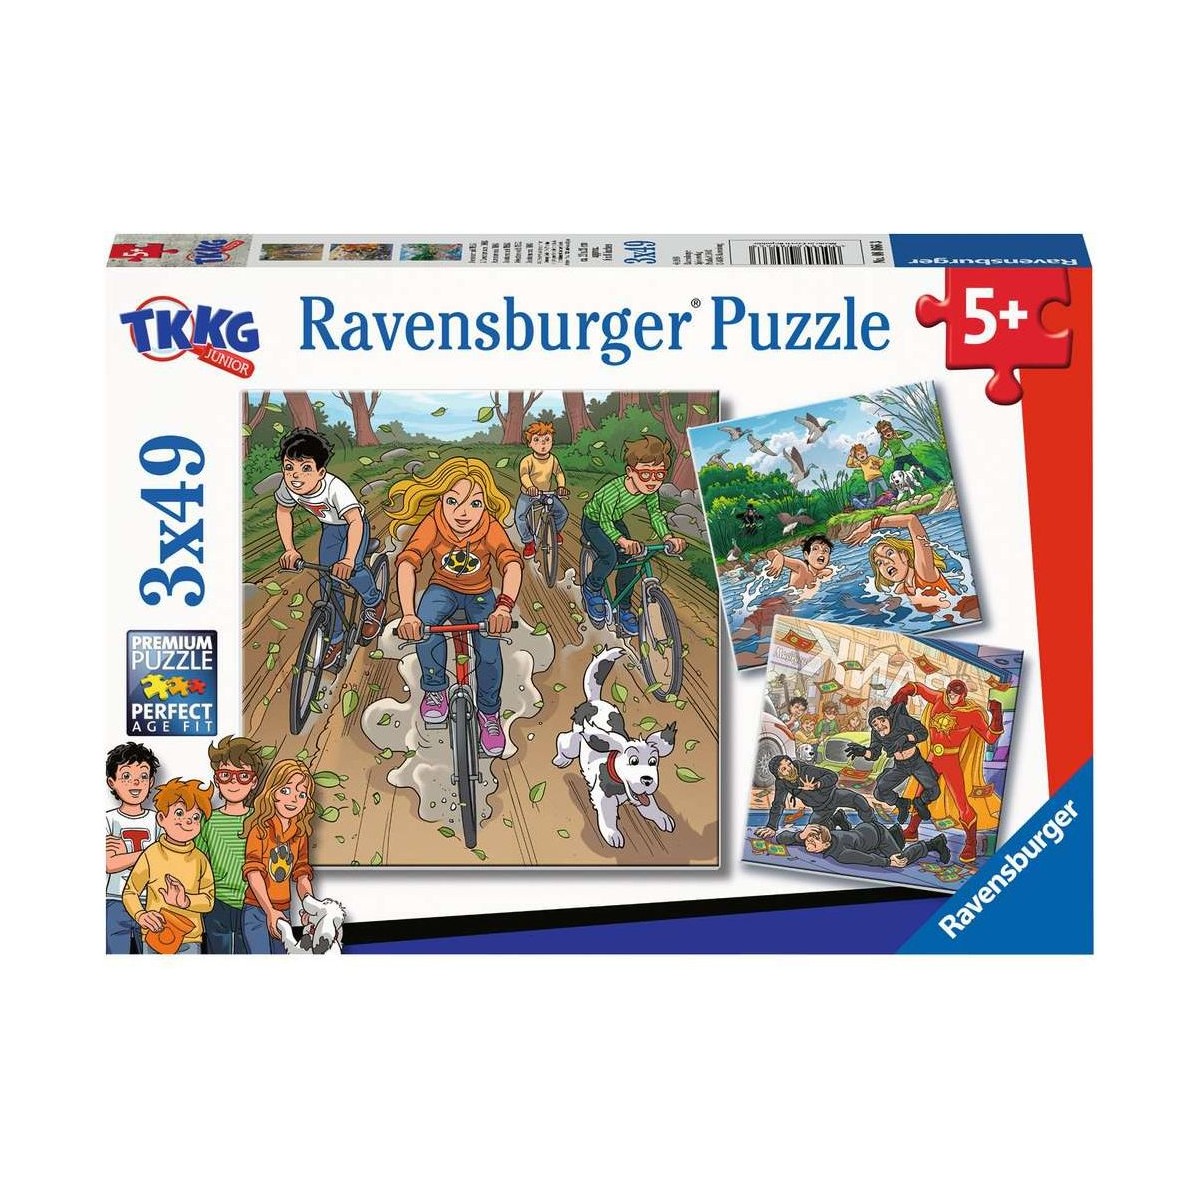 Ravensburger Spiel - Abenteuer mit TKKG, 3x49 Teile